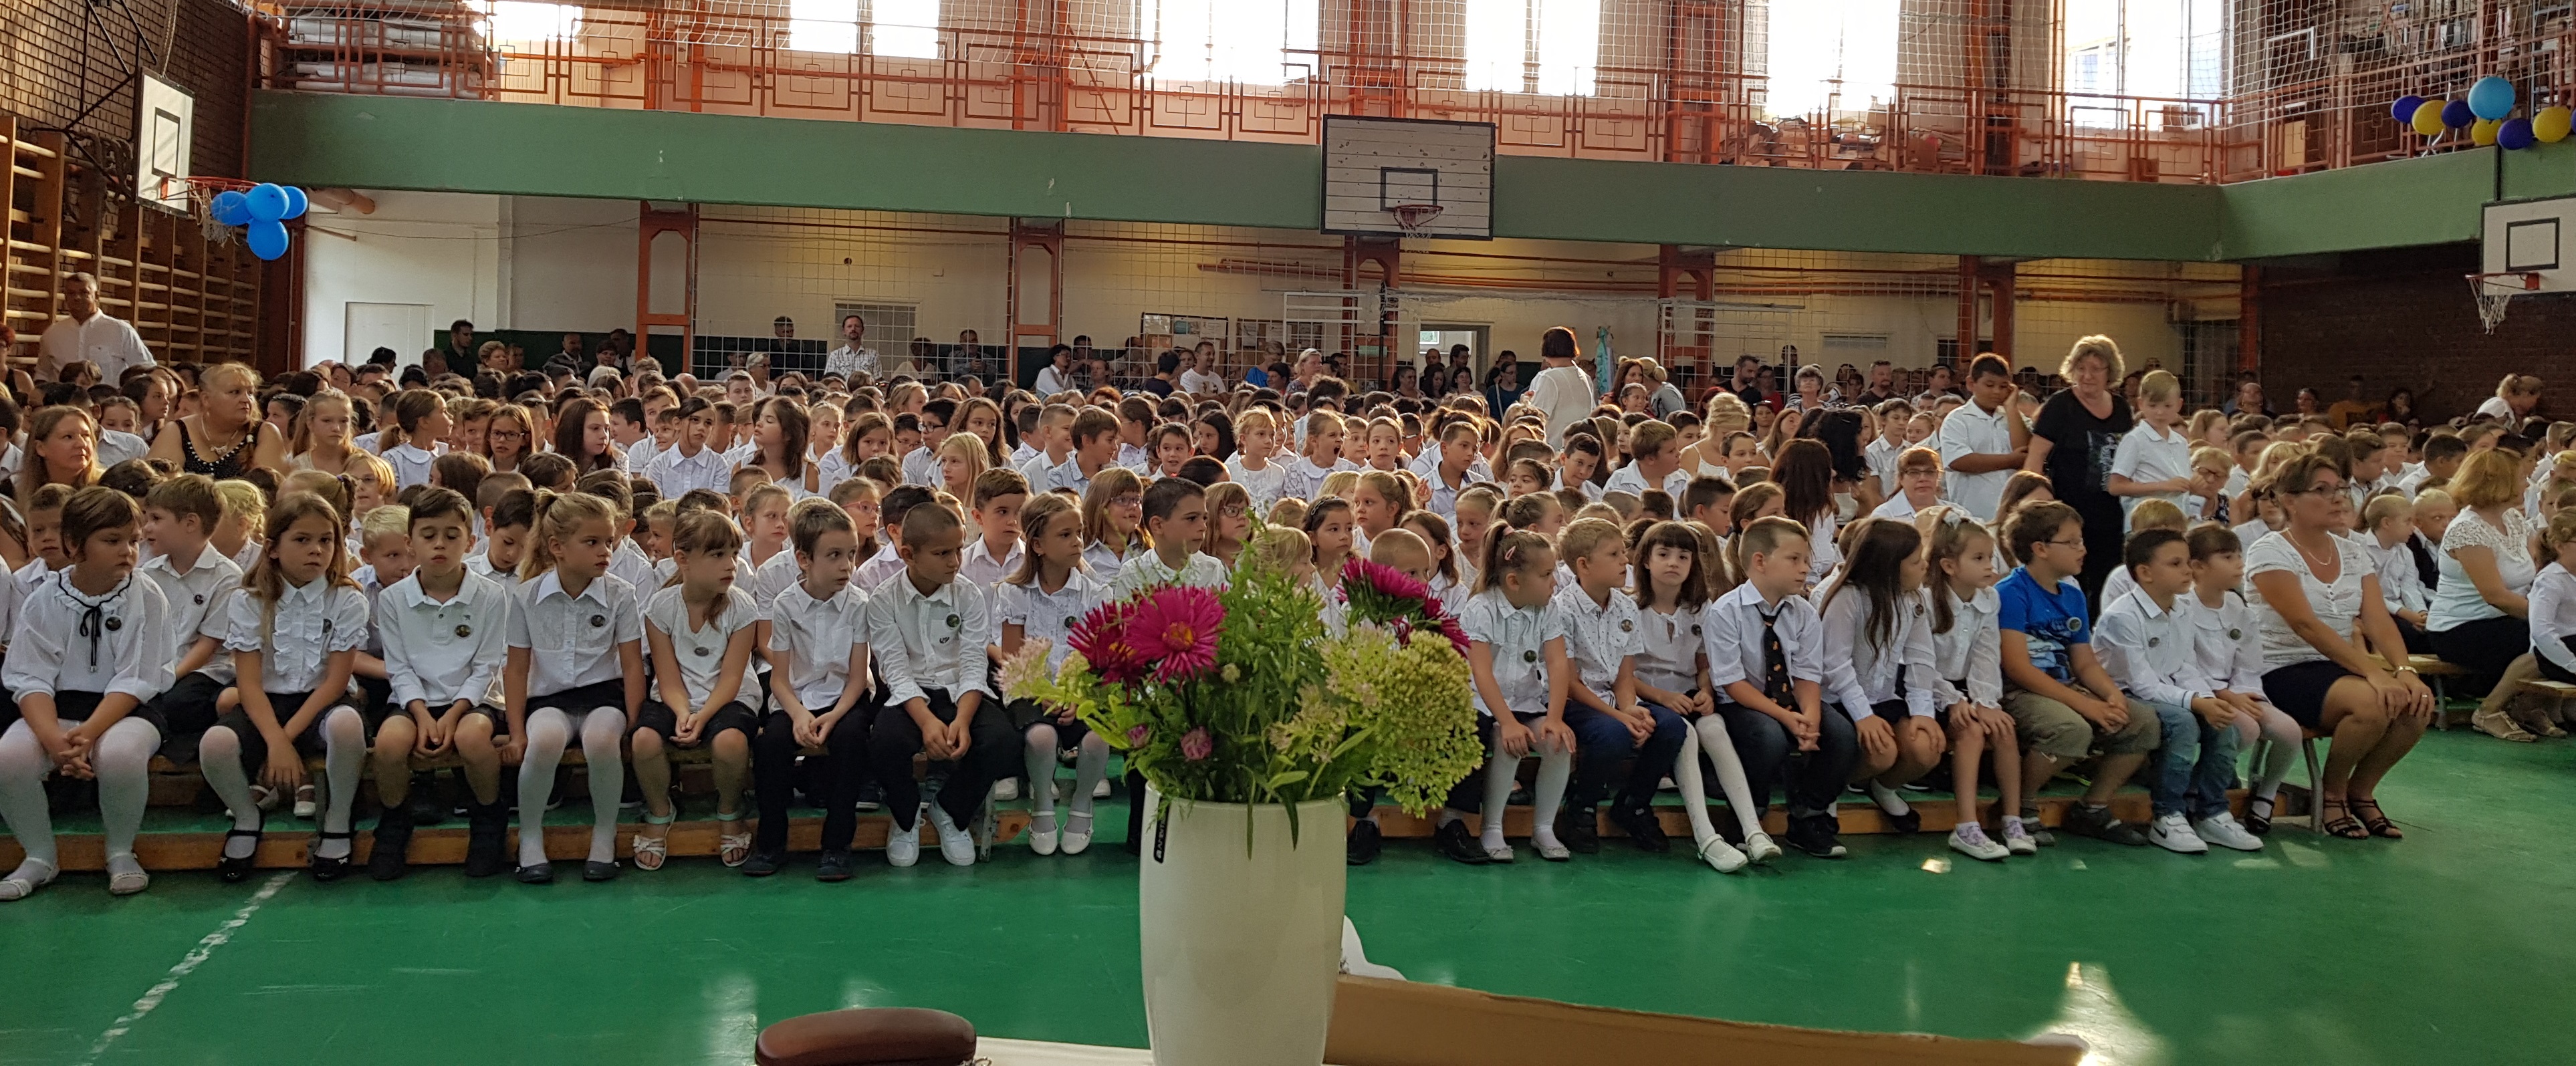 tiszaújváros széchenyi istván általános iskola